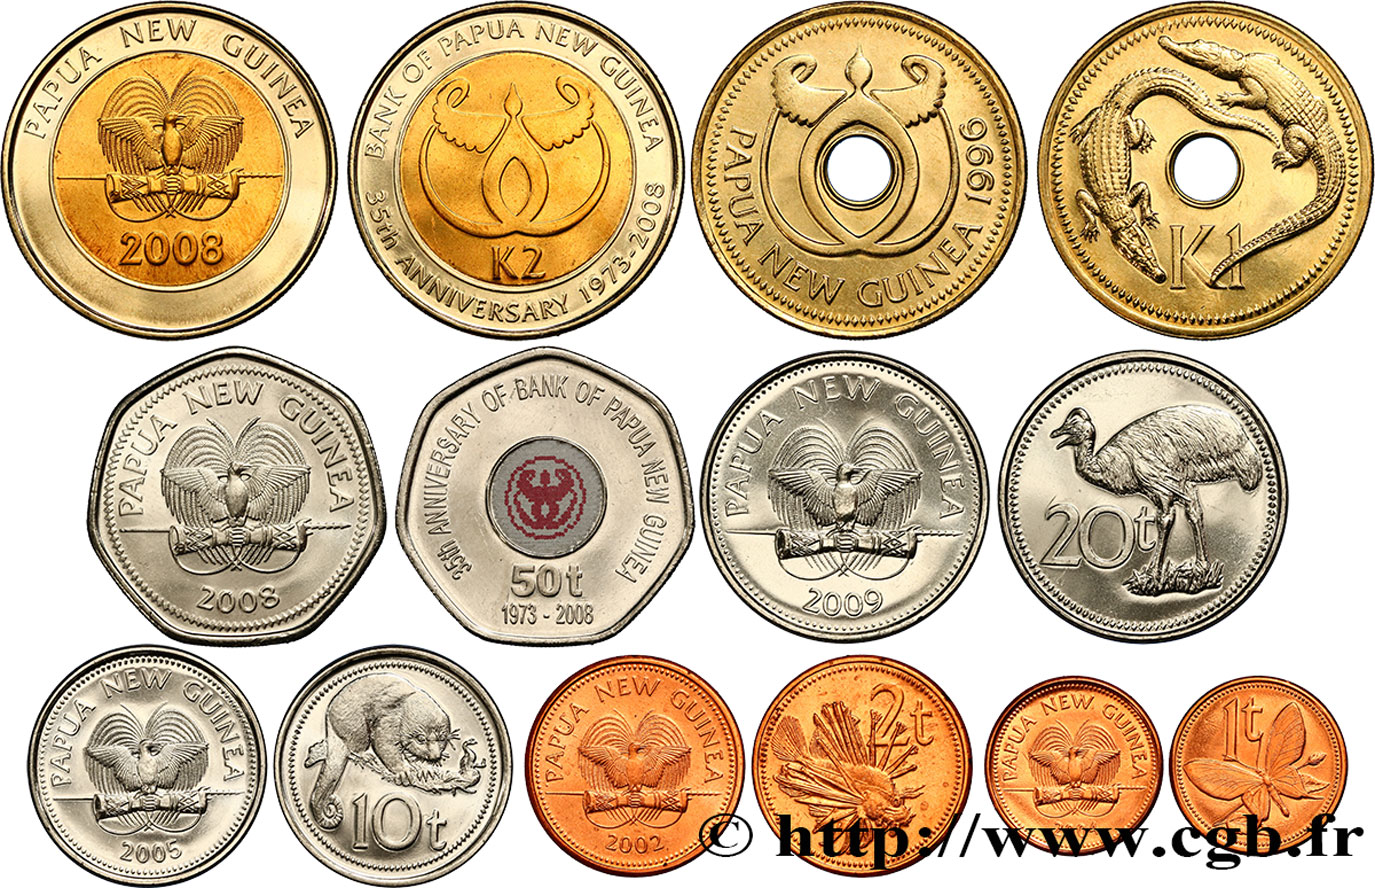 PAPúA-NUEVA GUINEA Lot de 8 monnaies 1, 2, 5, 10, 20 et 50 Toea, 1 & 2 Kina 1996-2009  SC 